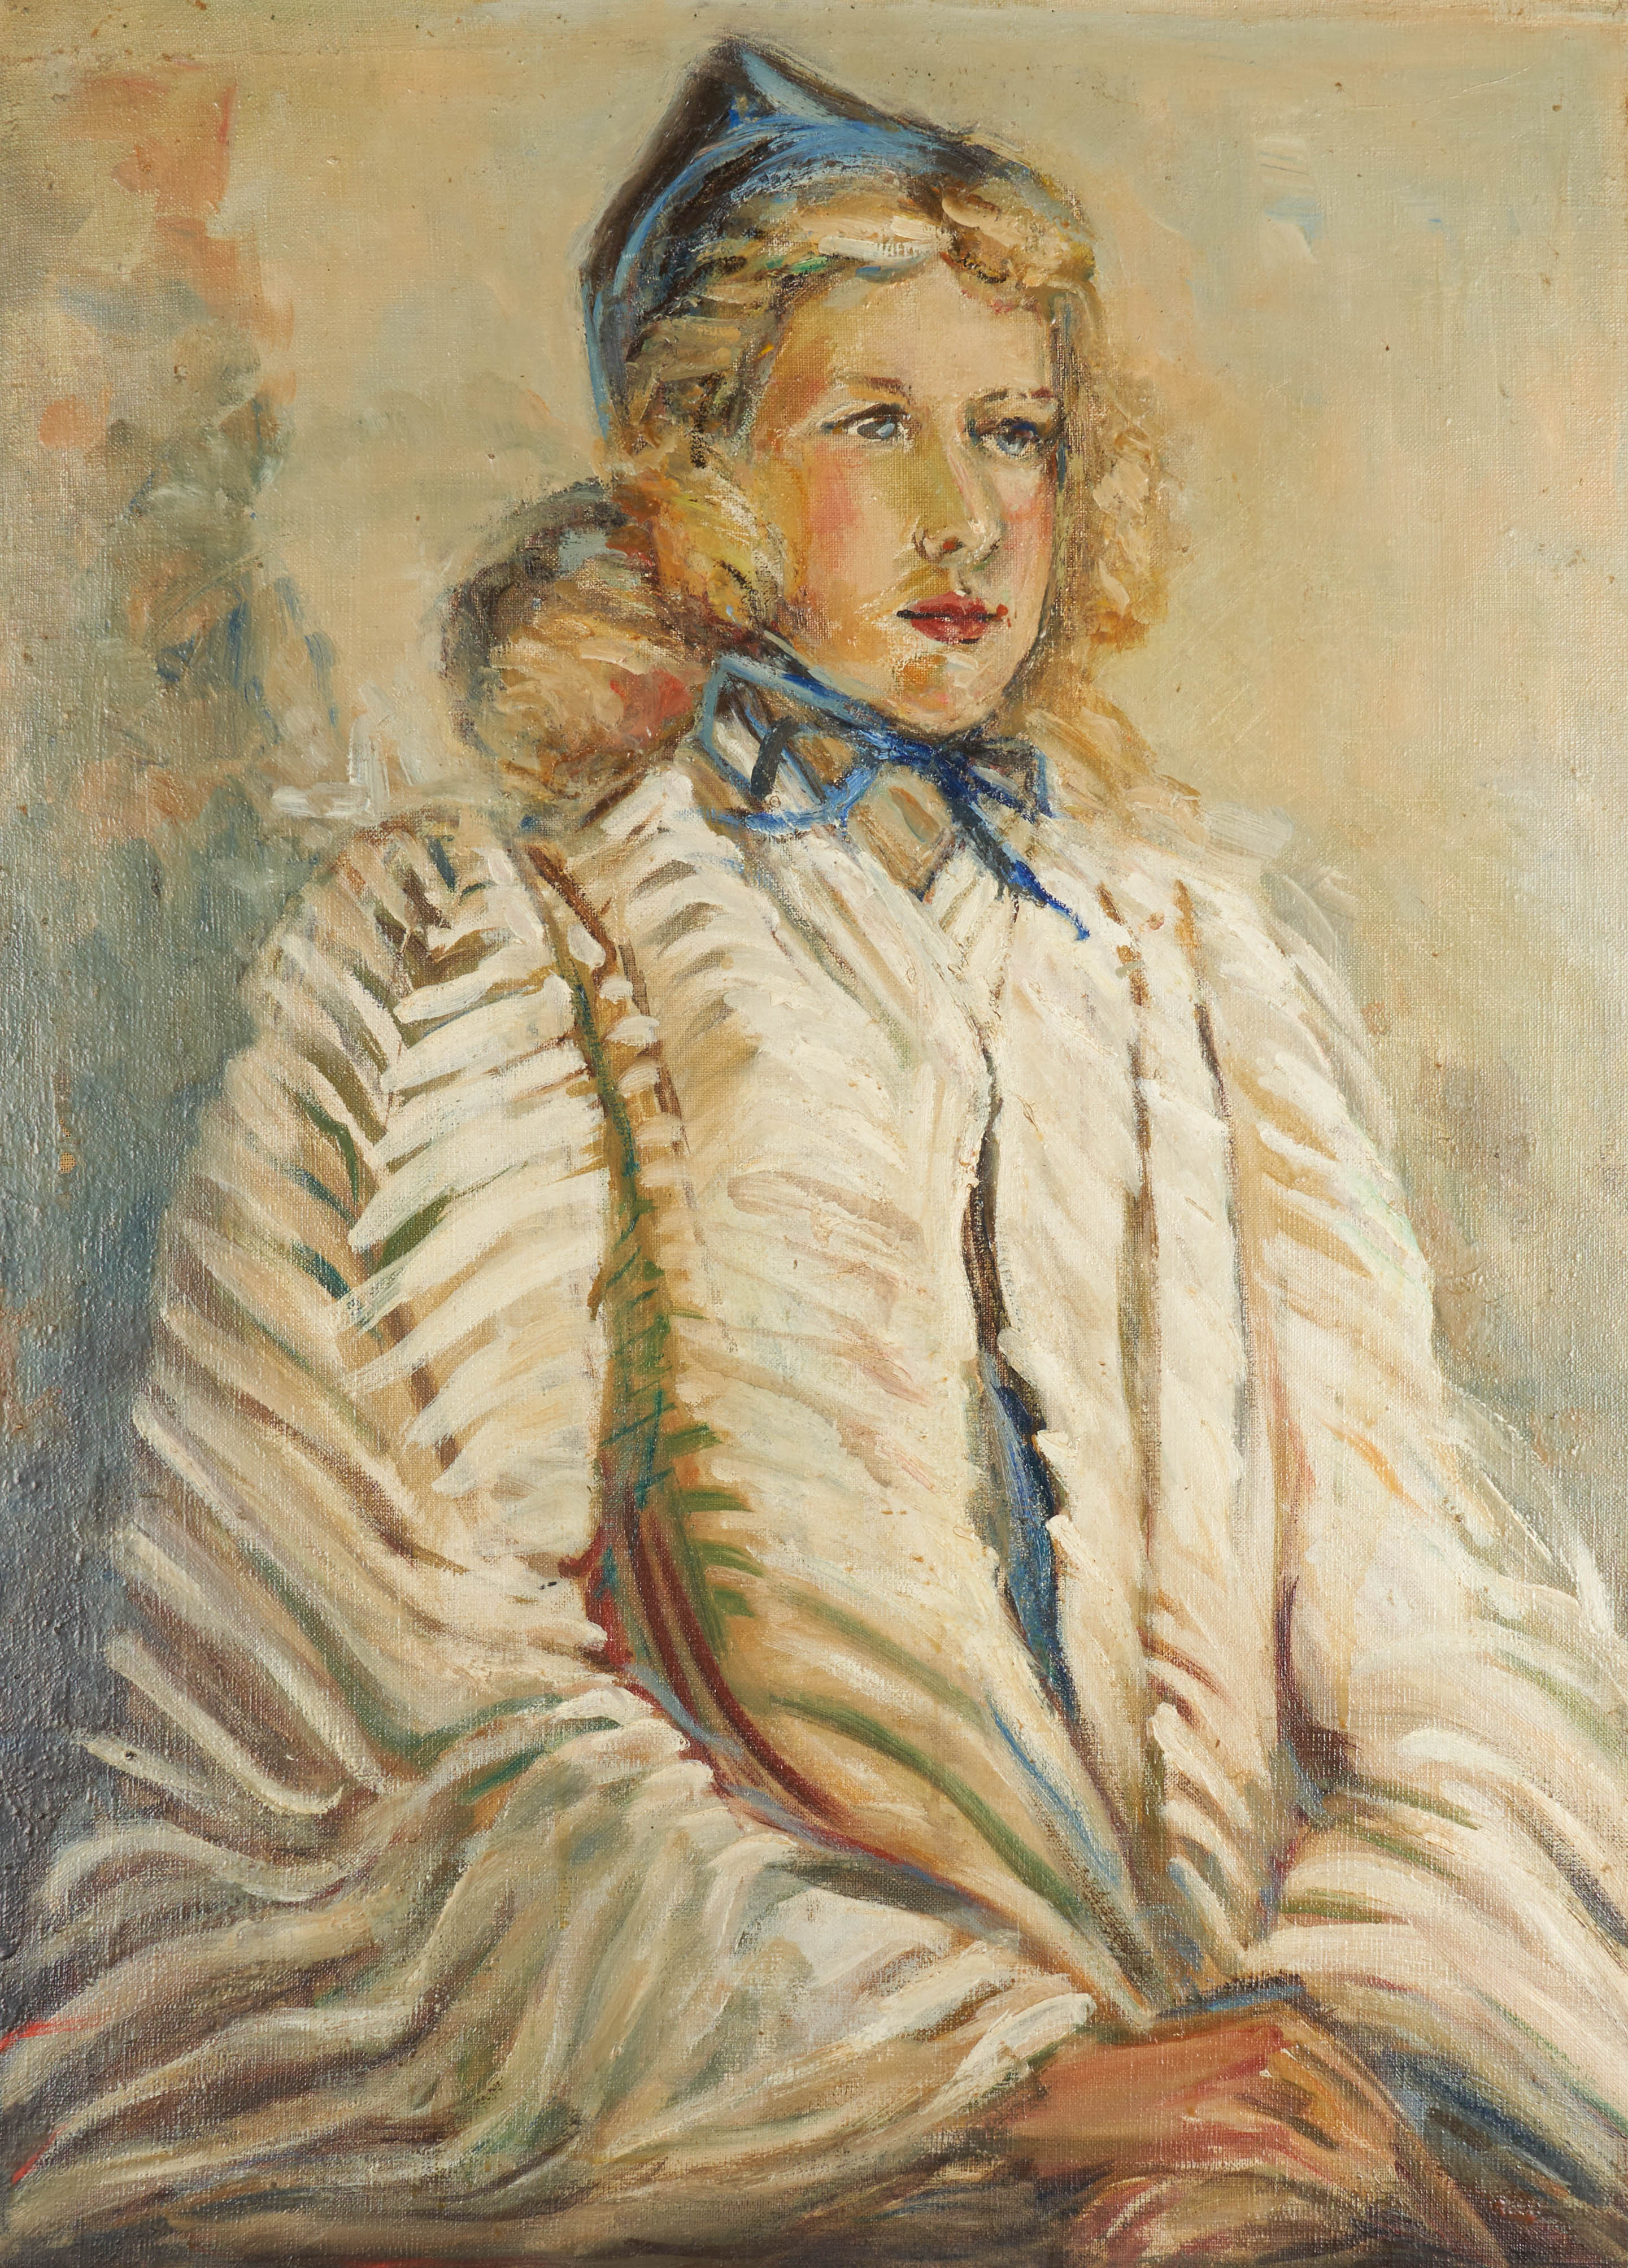 1930s Modernist portrait of a woman